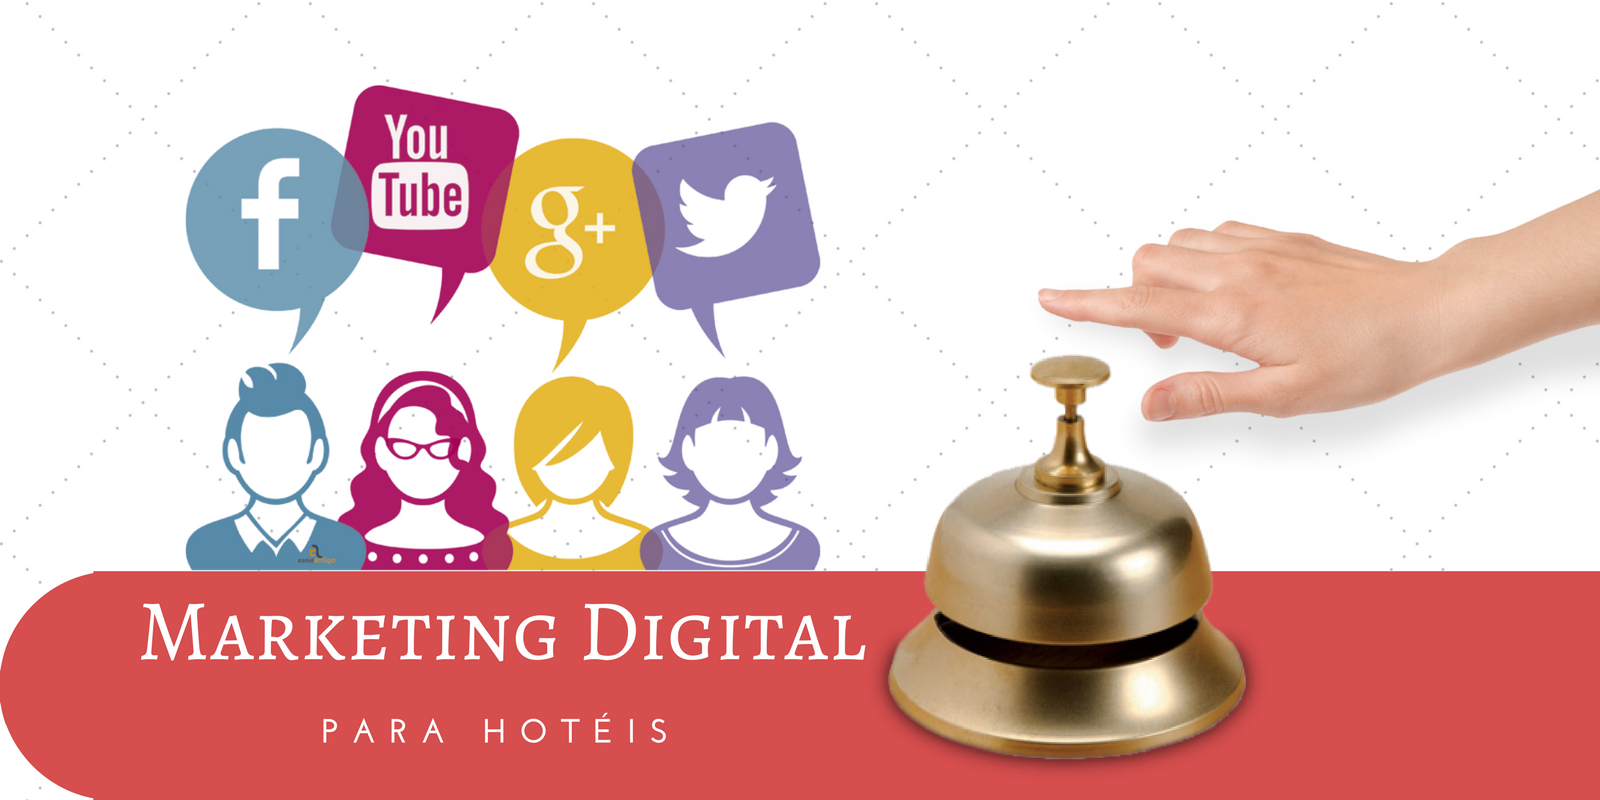 Marketing Digital para Hotéis - 5 motivos para você utilizar